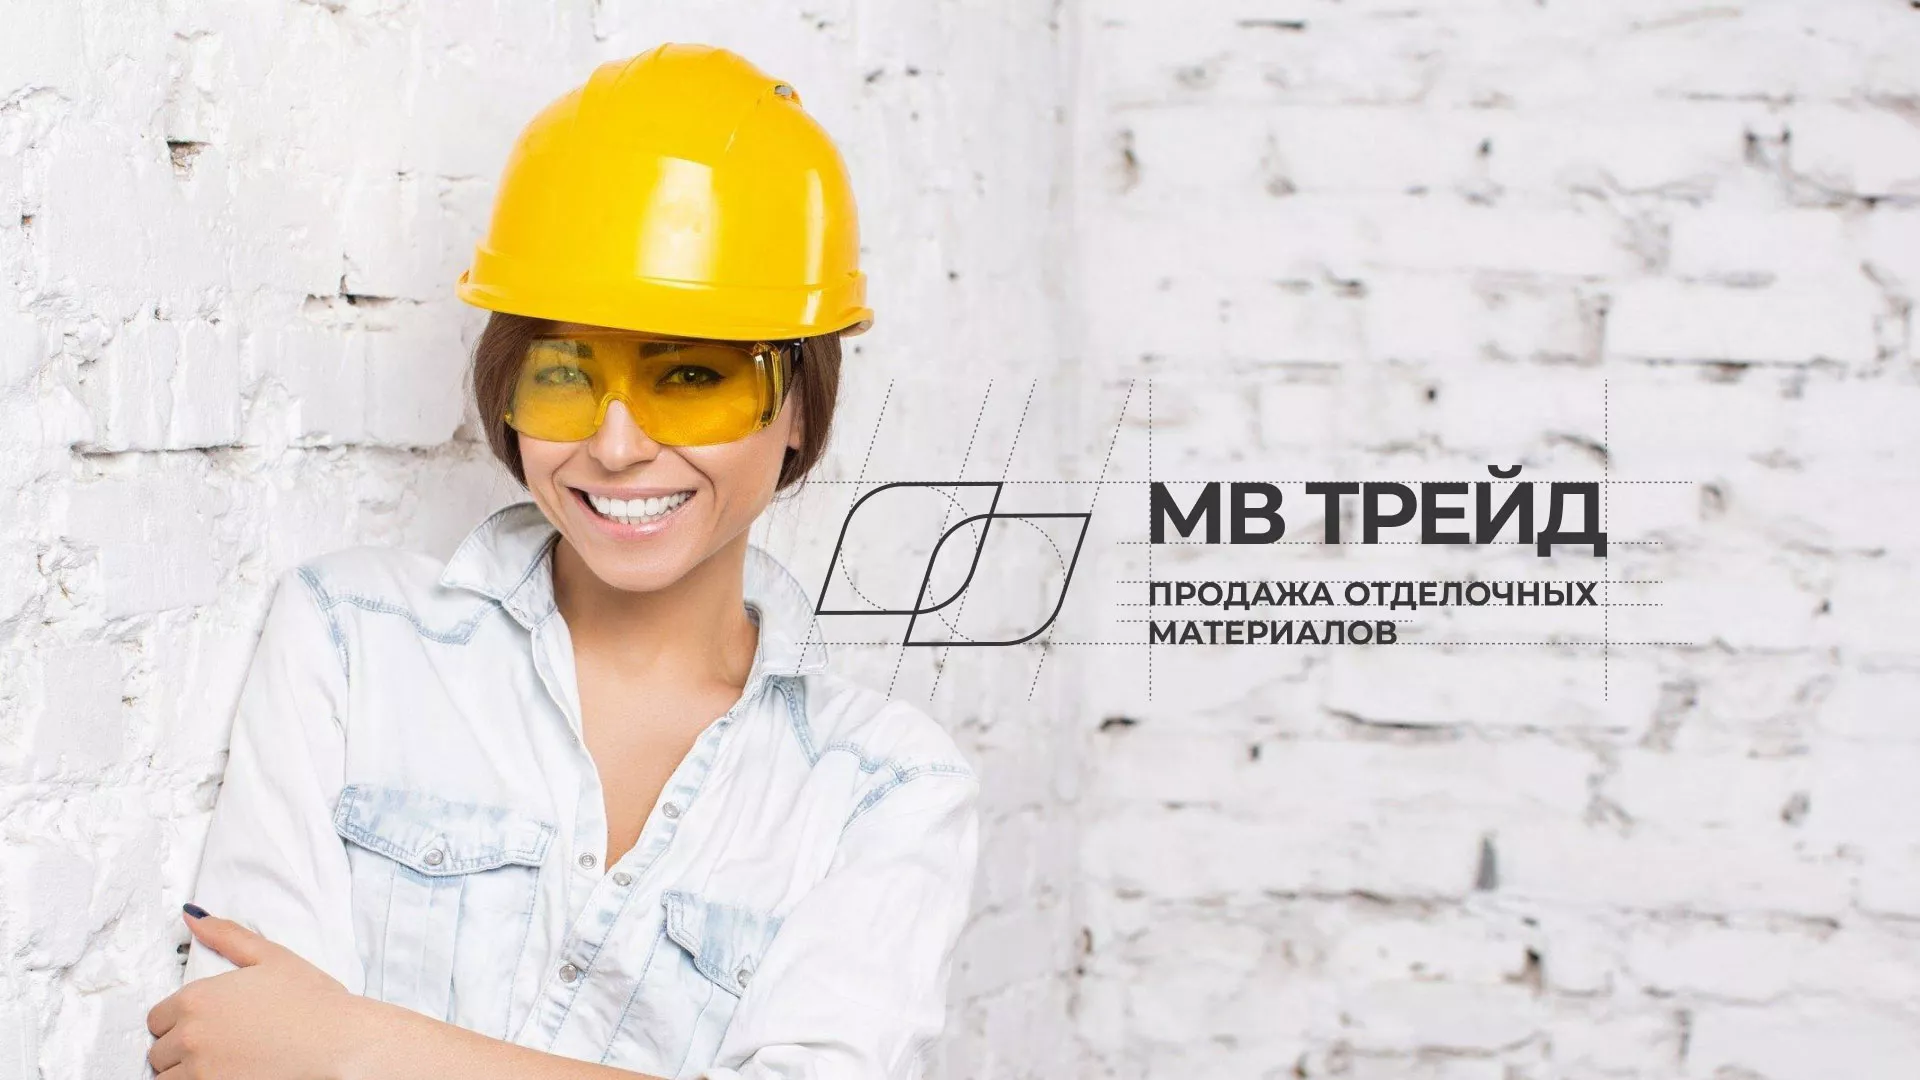 Разработка логотипа и сайта компании «МВ Трейд» в Усть-Джегуте